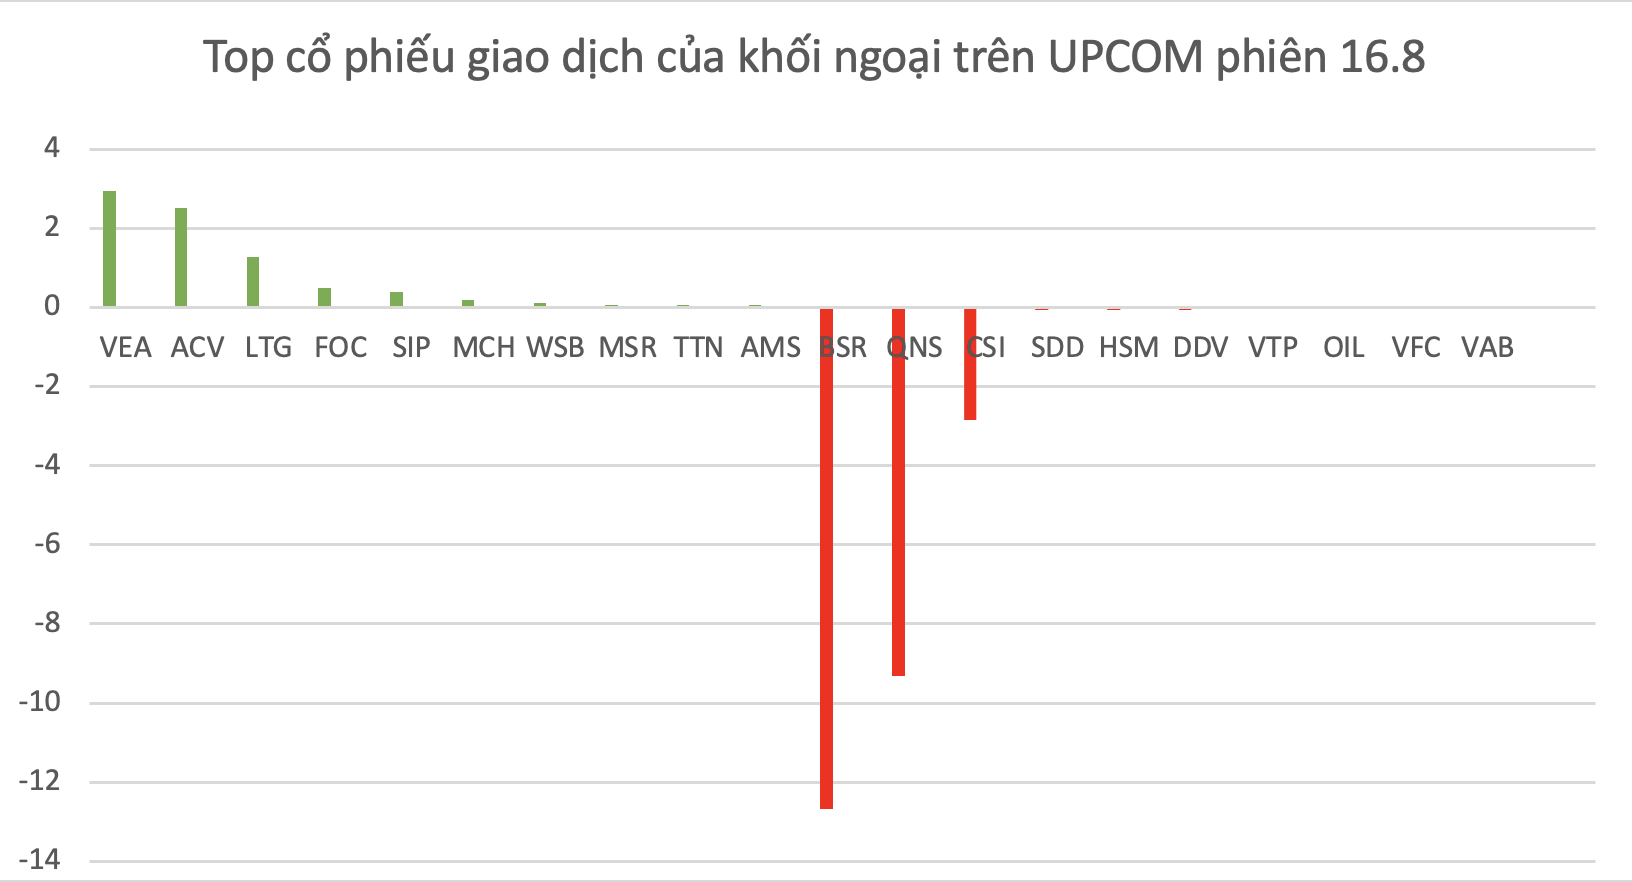 Top mã chứng khoán được khối ngoại giao dịch trên UPCOM trong phiên 16.8.